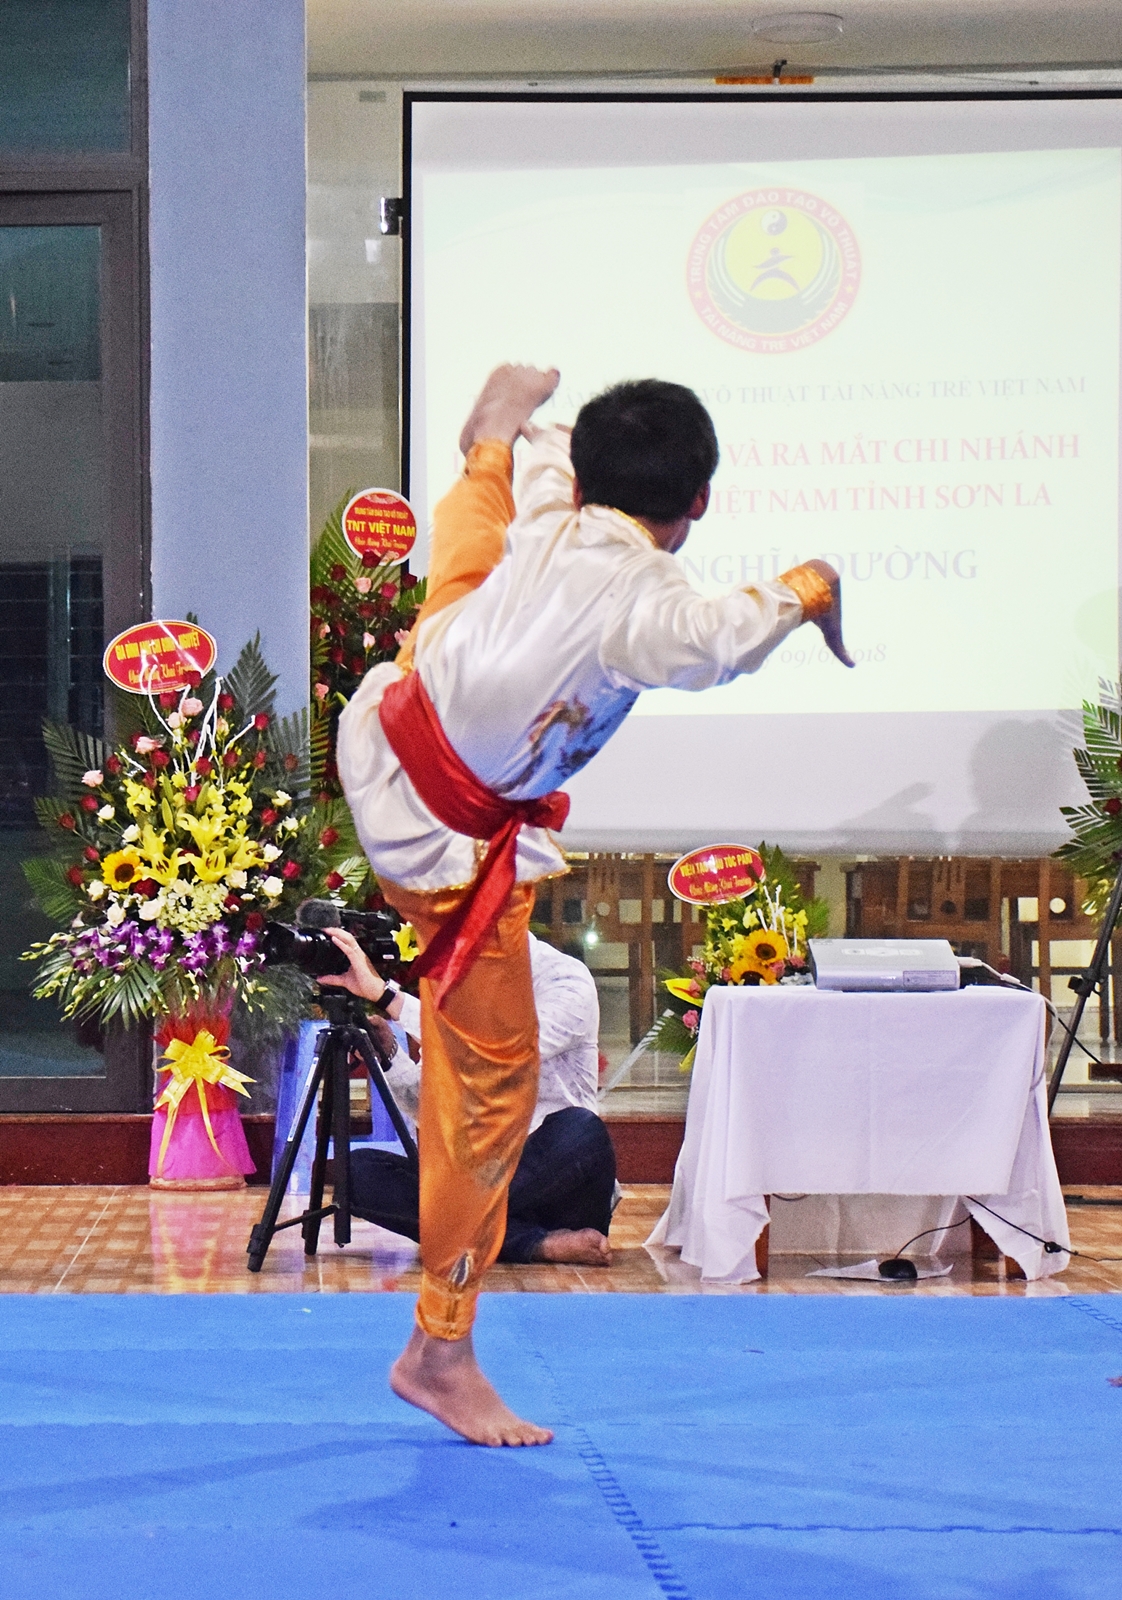 Ra mắt chi nhánh tài năng trẻ Việt Nam tại Sơn La - Hình 11